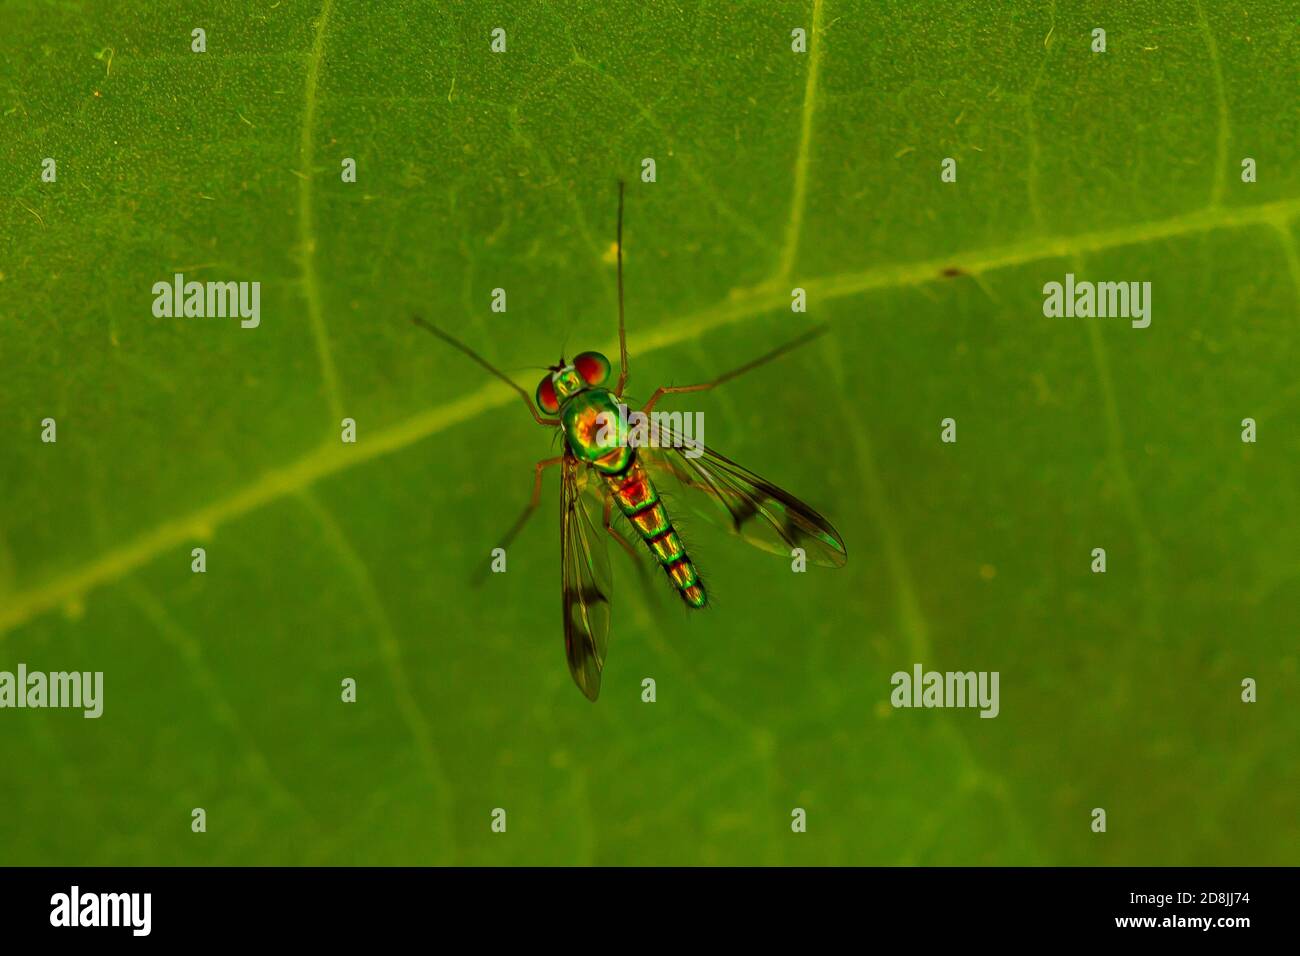 Nahaufnahme eines CondyloStylus caudatus fliegen auf einem grünen Bohnenblatt. Das Makrolinsenbild zeigt die Details des schlanken, behaarten Gehäuses mit lebhaftem Metallic-gree Stockfoto